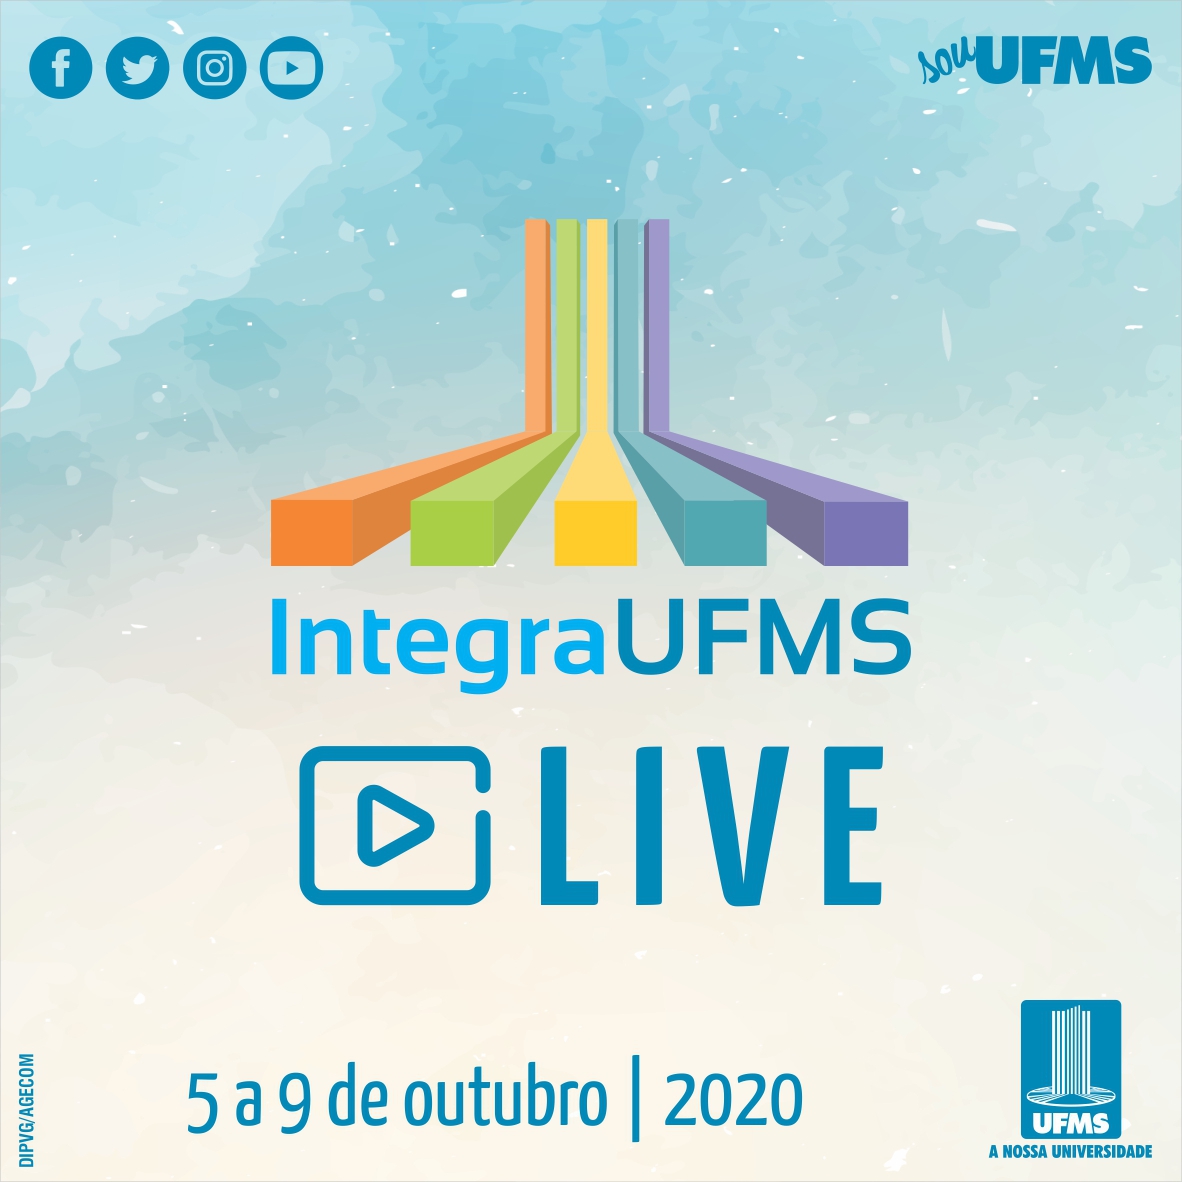 Programação das Sessões Técnicas - Integra UFMS